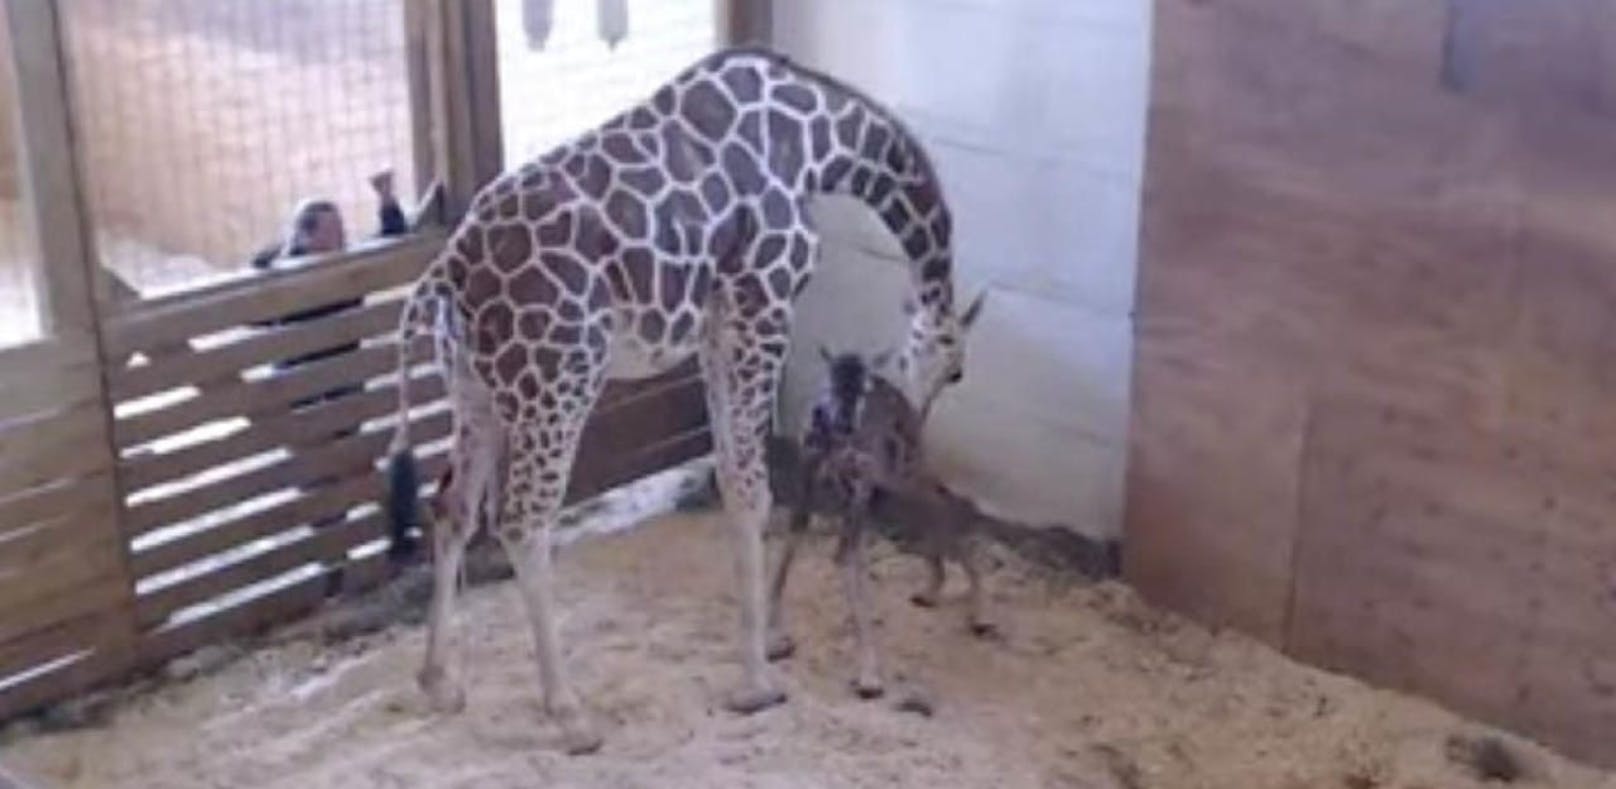 Geburt live im Internet: Giraffen-Baby ist da!